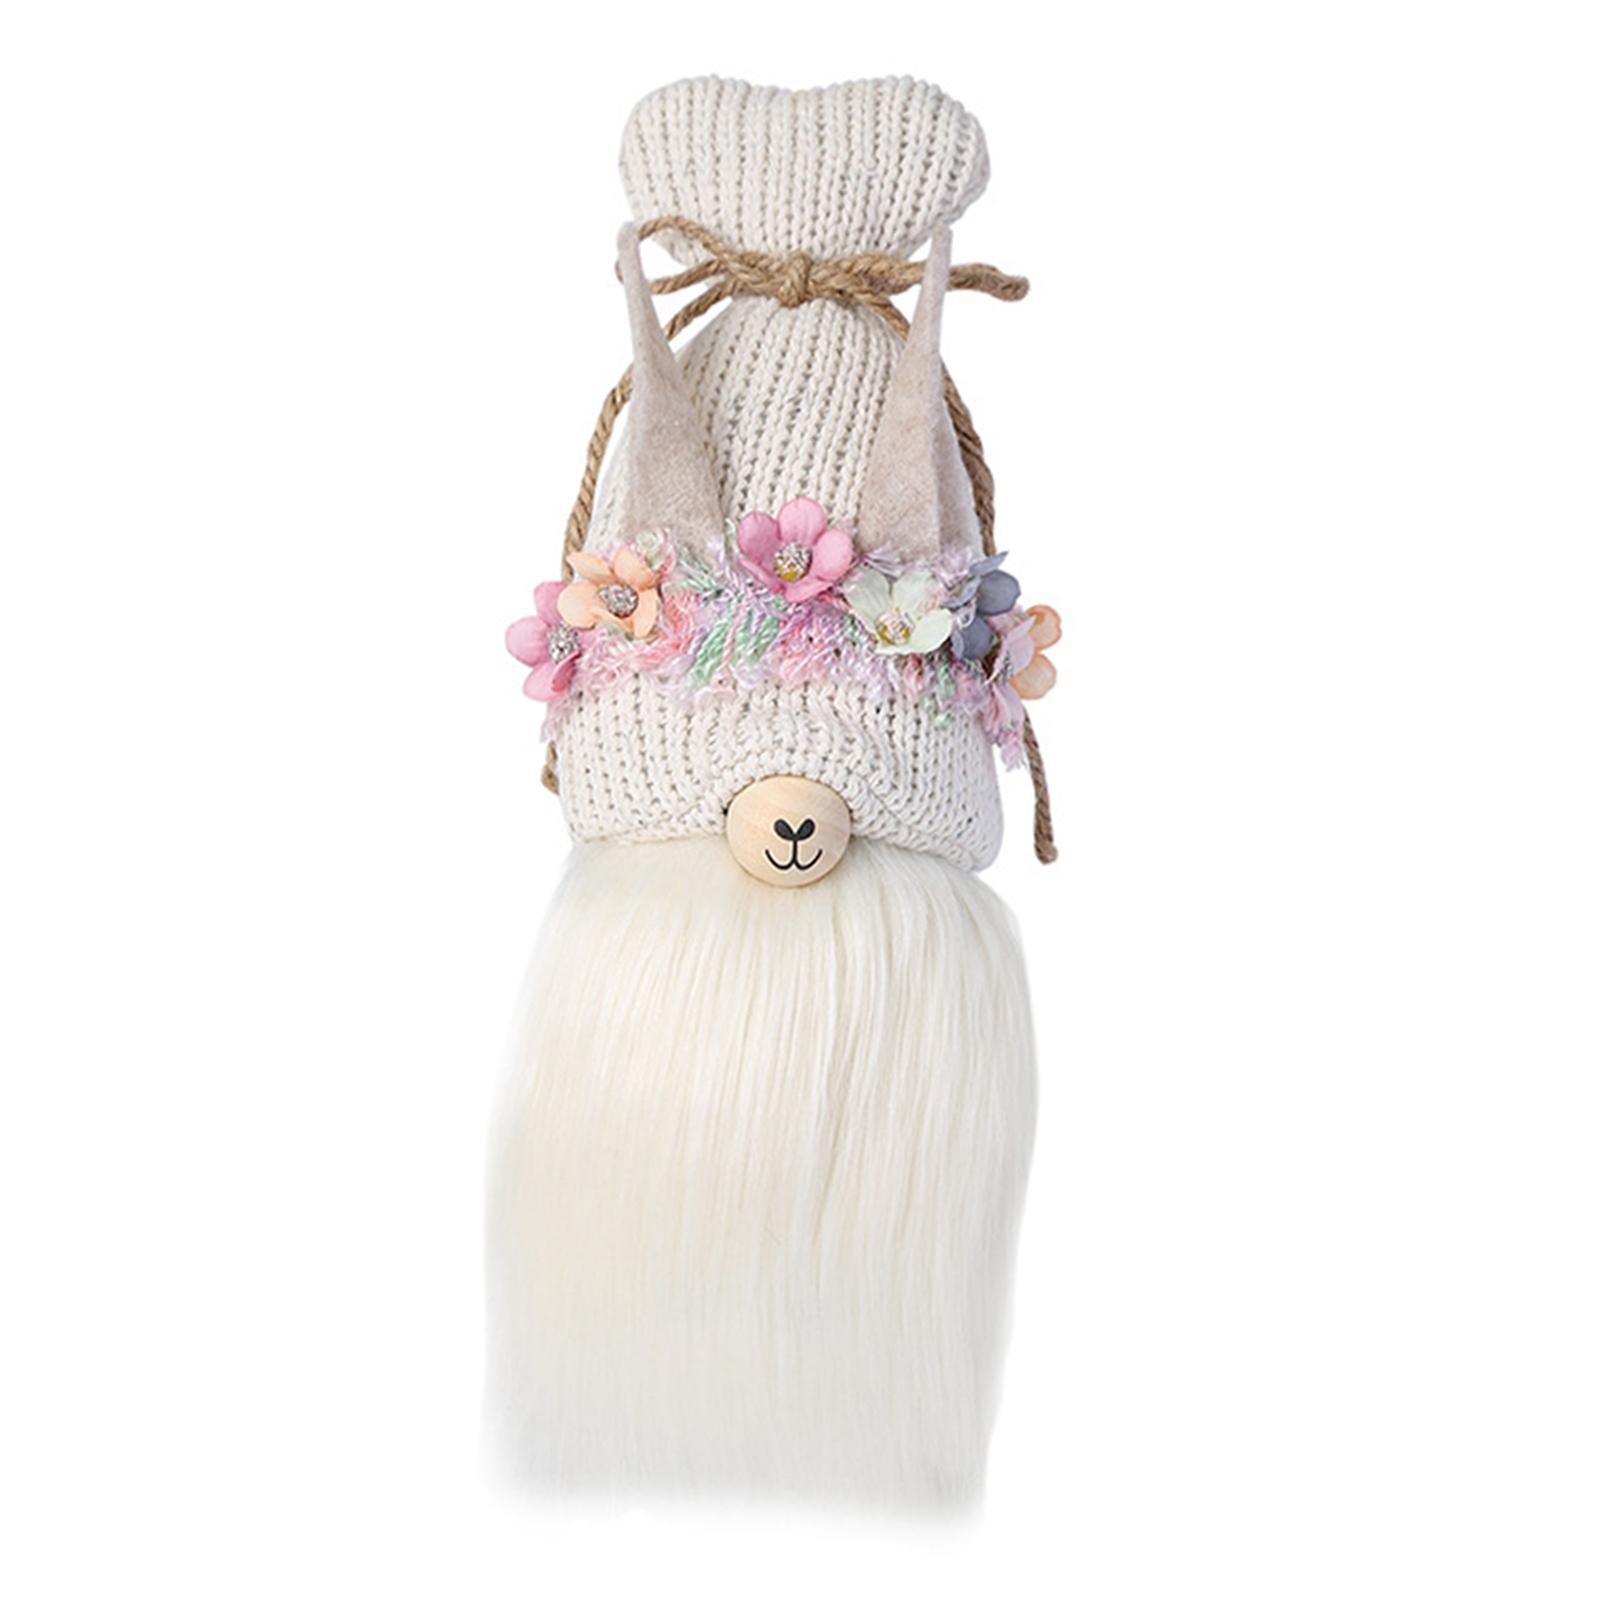 Faceless Alpaca Doll Christmas Gnomes Decoration for Holiday Shelf Decor